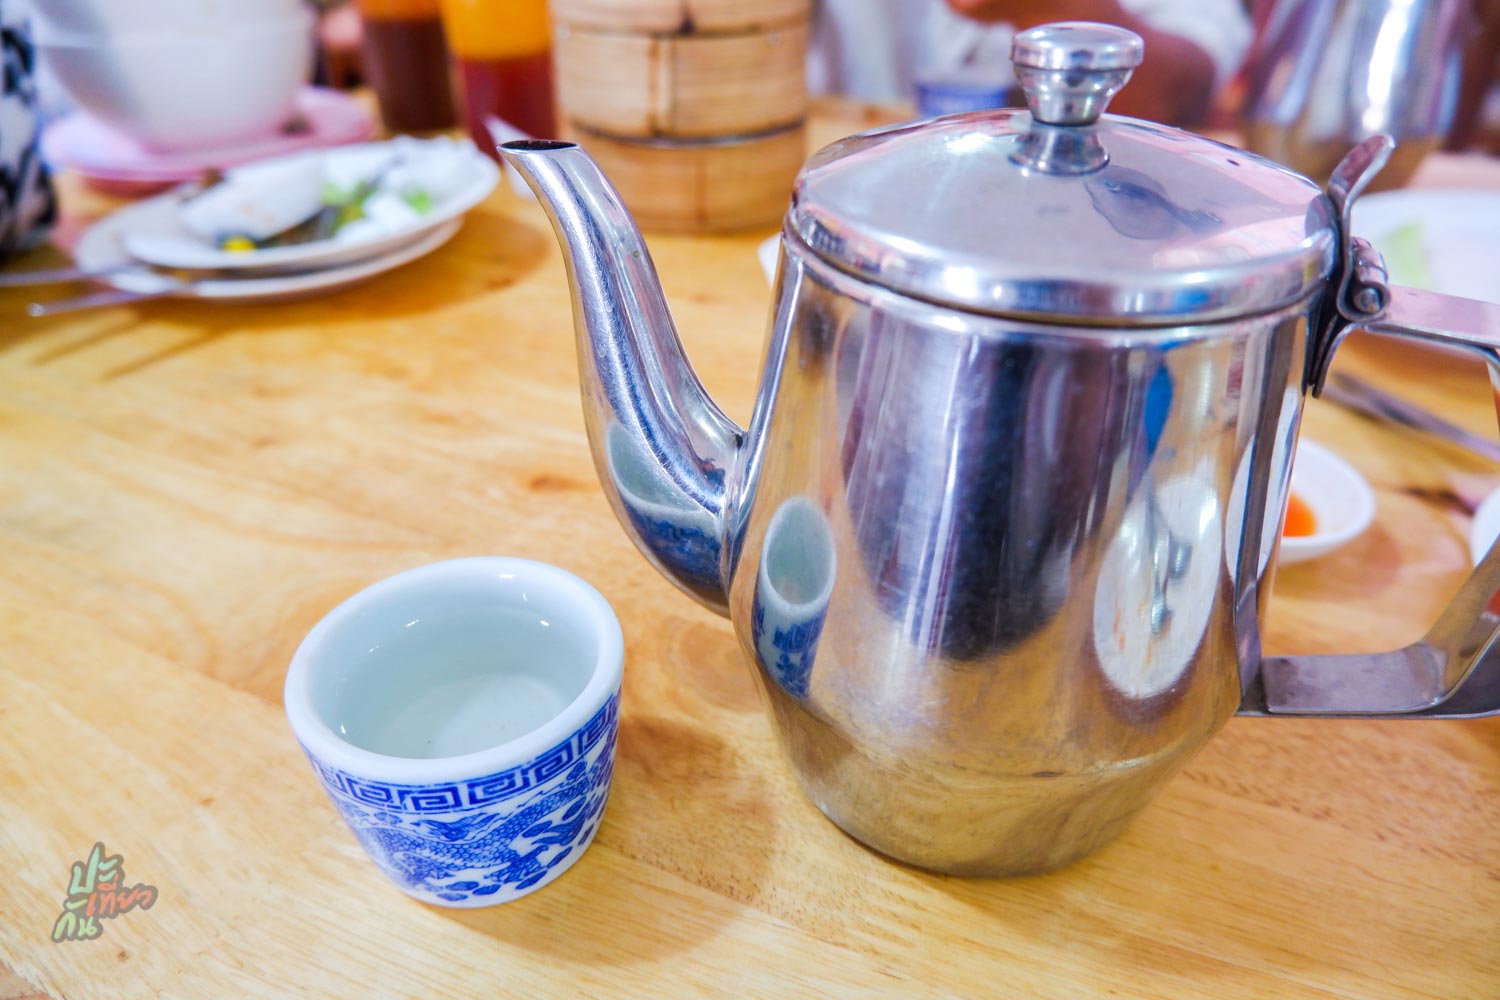 น้ำชาร้อน ร้านโกฮุย